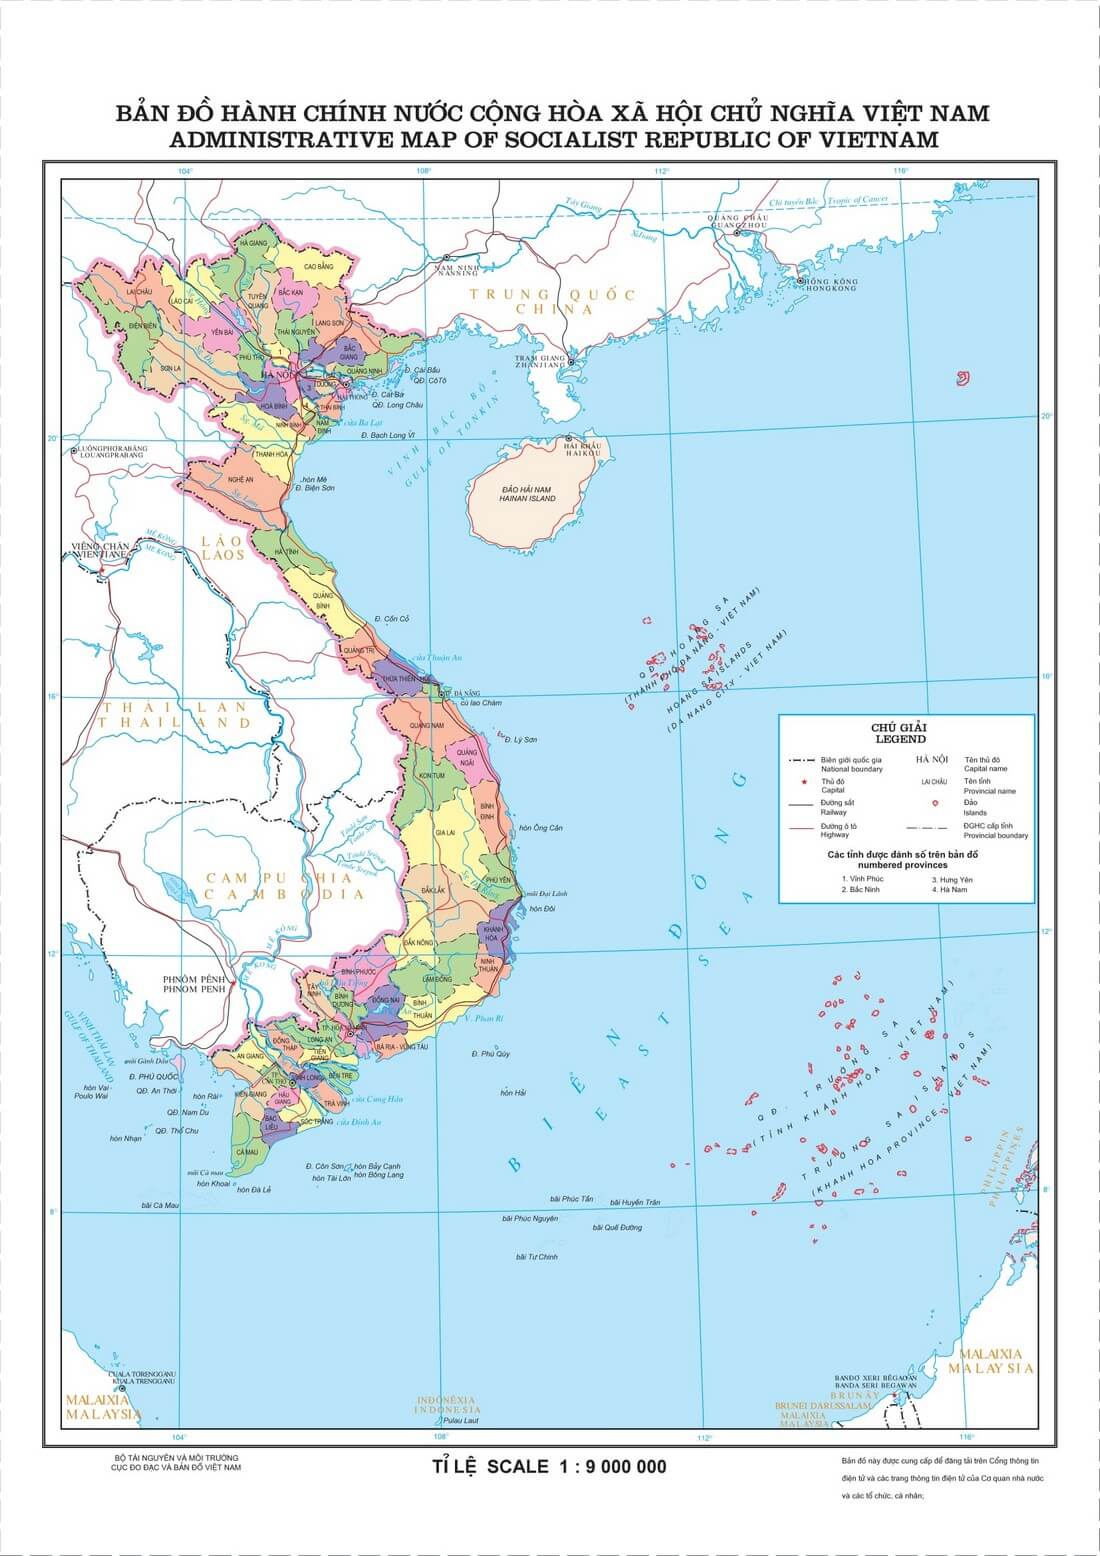 Cập nhật 2022 bản đồ hành chính 63 tỉnh thành Việt Nam, là công cụ tuyệt vời cho những ai muốn tìm hiểu về sự phân cấp hành chính của đất nước. Đây là phiên bản mới nhất với nhiều thông tin đầy đủ và cập nhật, giúp bạn tiếp cận với các thông tin về phân cấp hành chính Việt Nam nhanh chóng và chính xác hơn bao giờ hết.